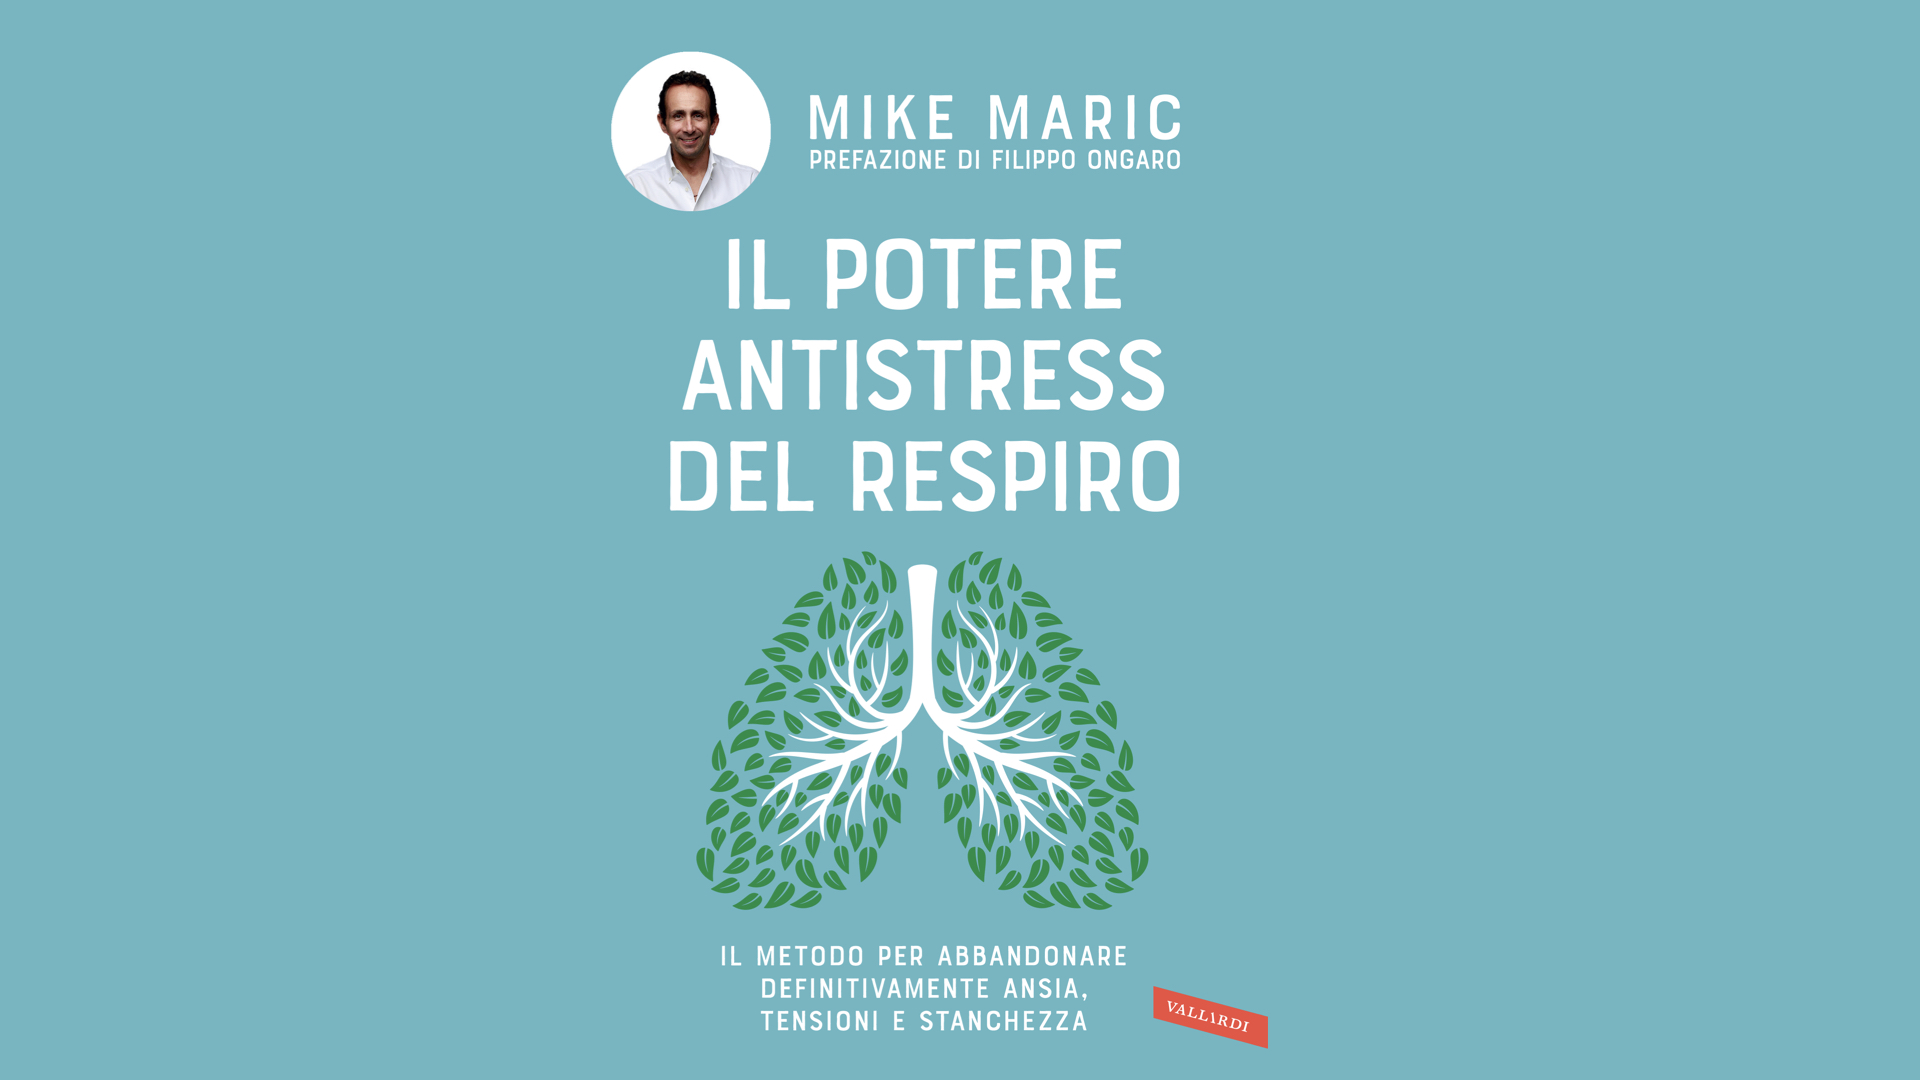 Il potere antistress del respiro, il nuovo libro di Mike Maric